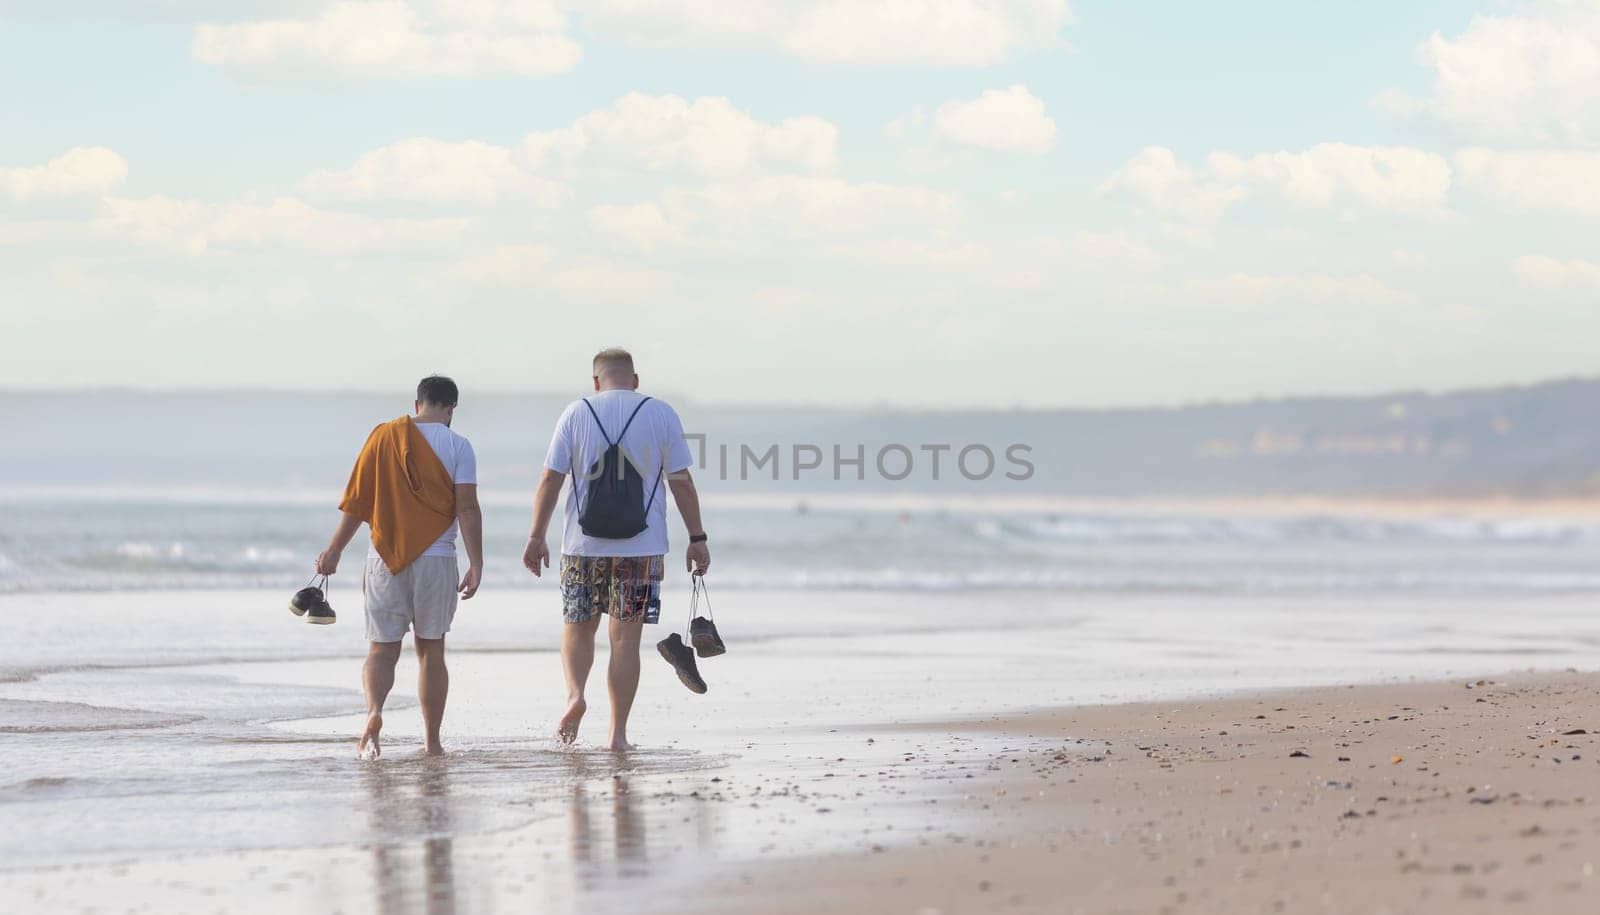 A couple of men walking along a beach next to the ocean